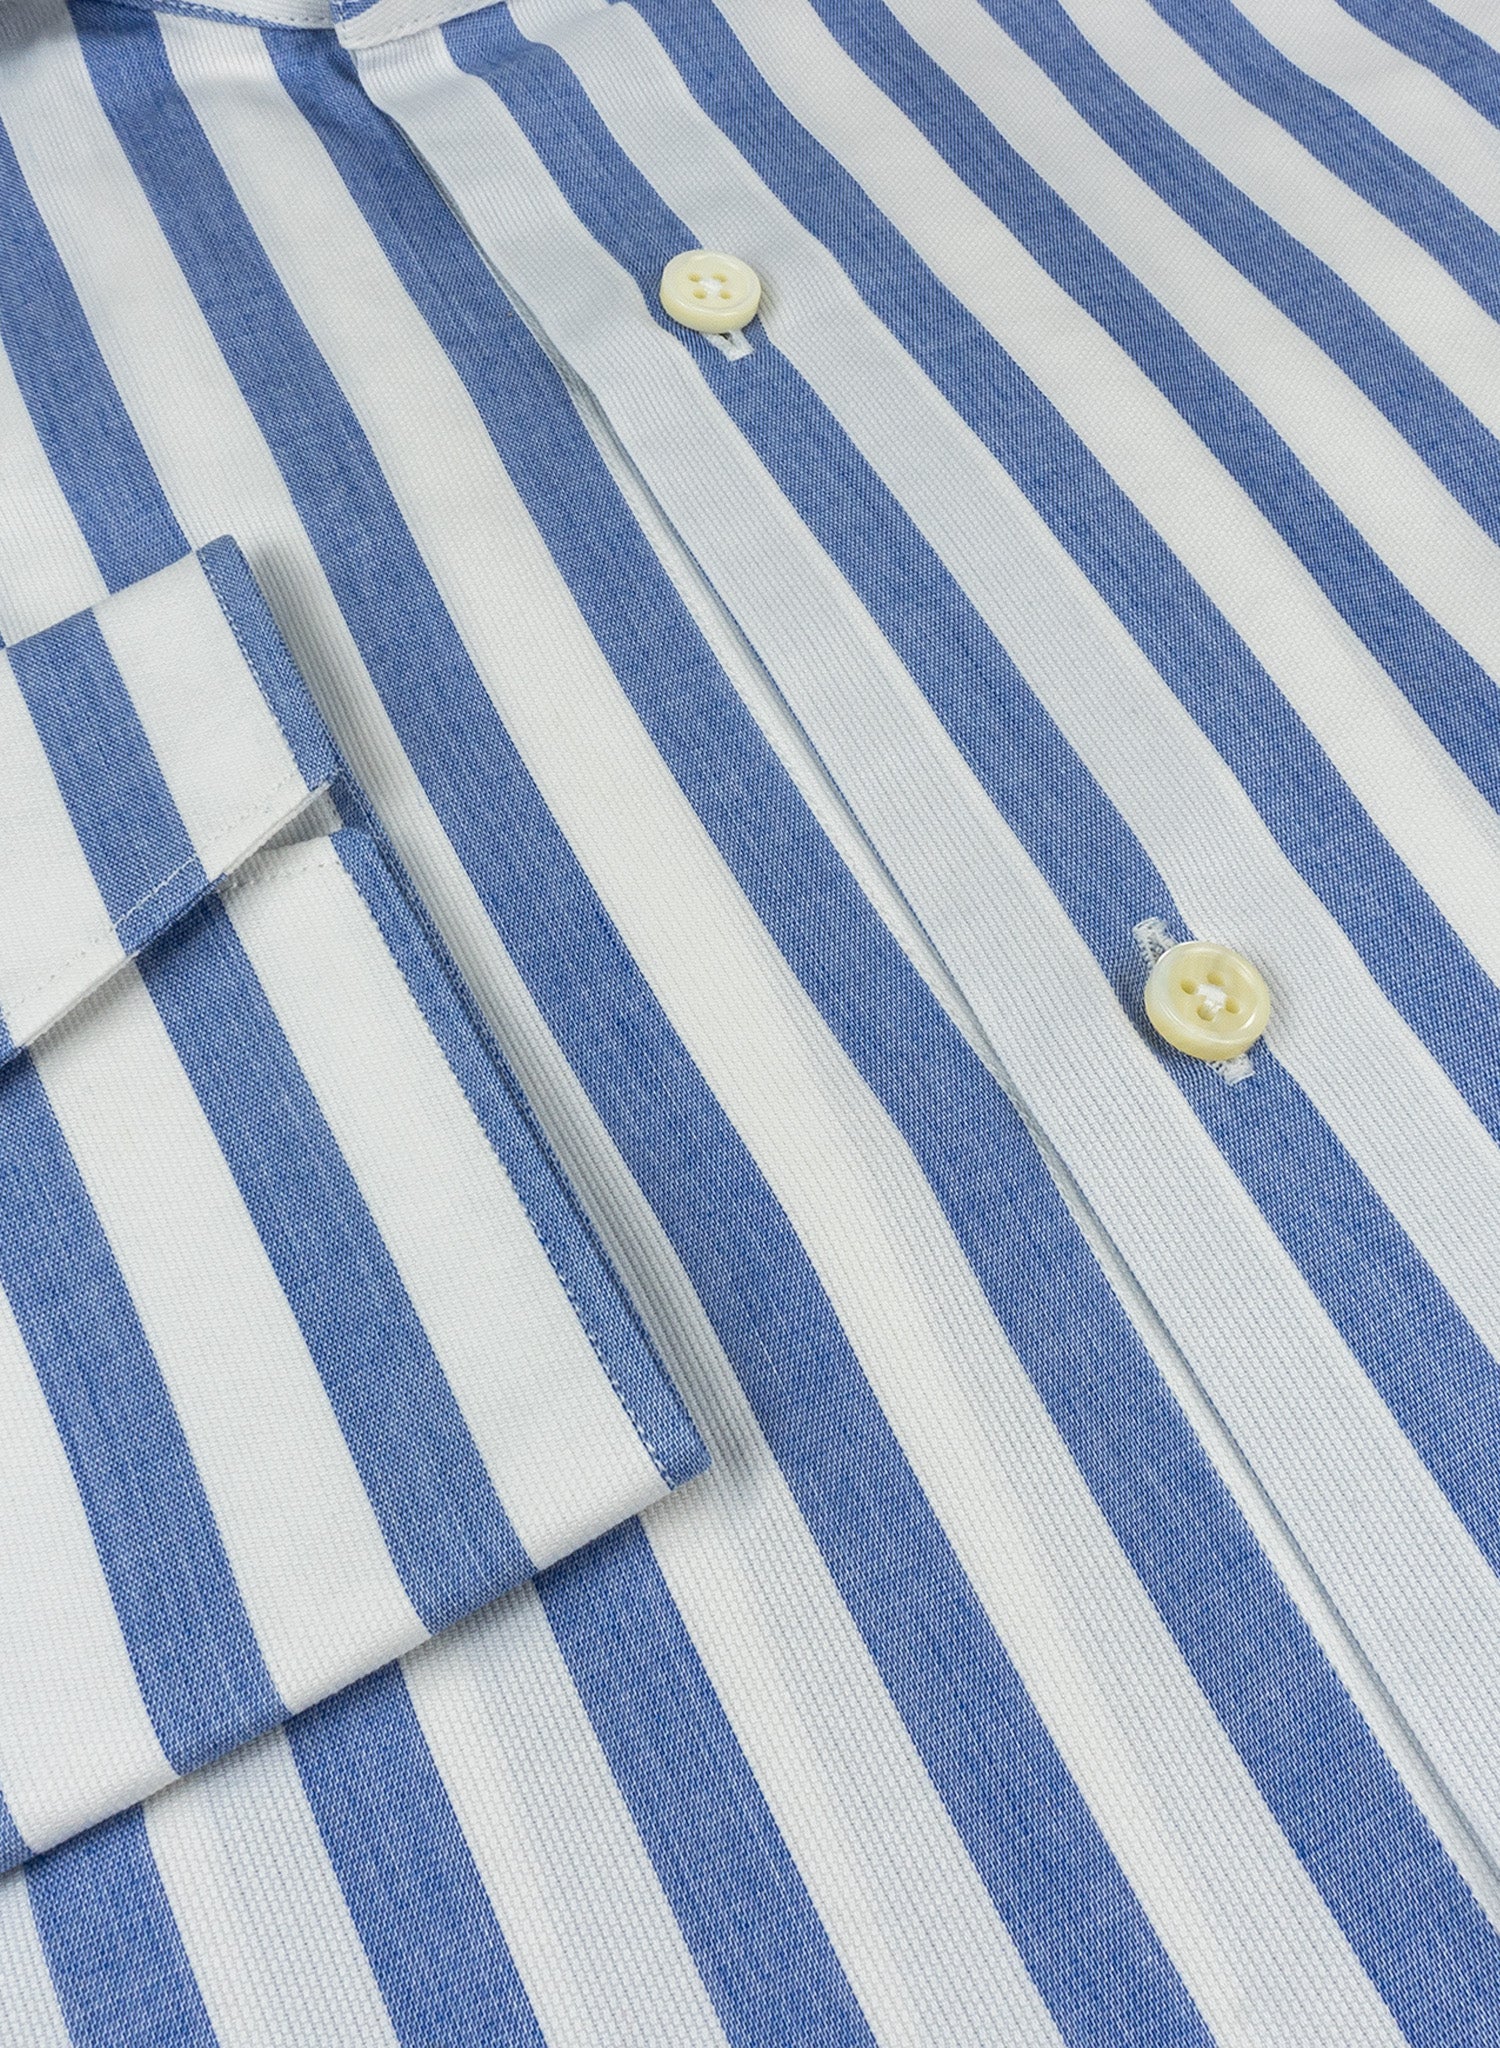 Chemise à fines rayures bleue et blanche